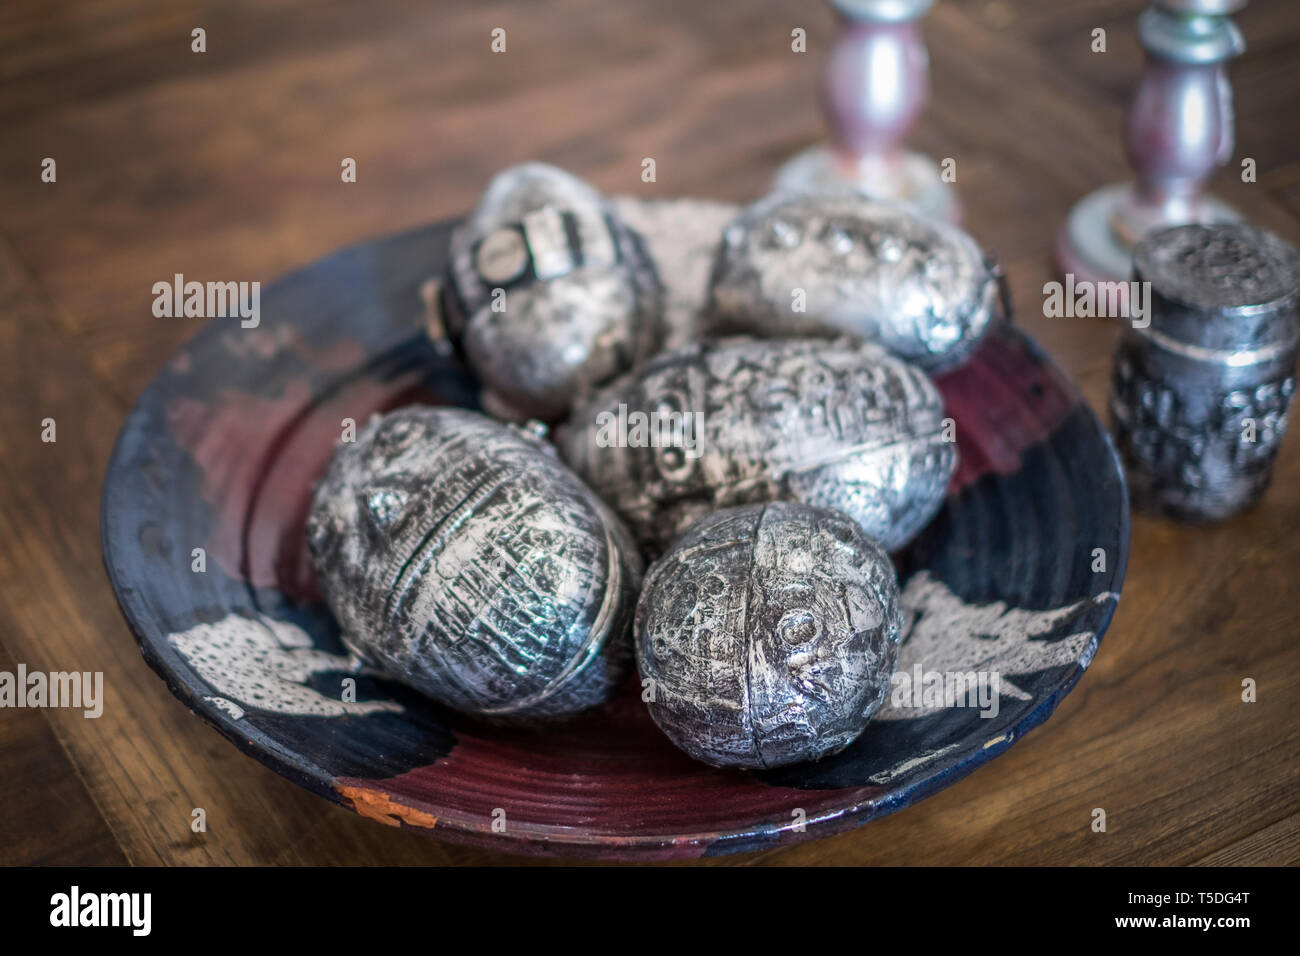 Decorazioni tradizionali a base di uova di Pasqua progettate come uova stile punk dall'artista svedese Lena Svedjeholm Foto Stock